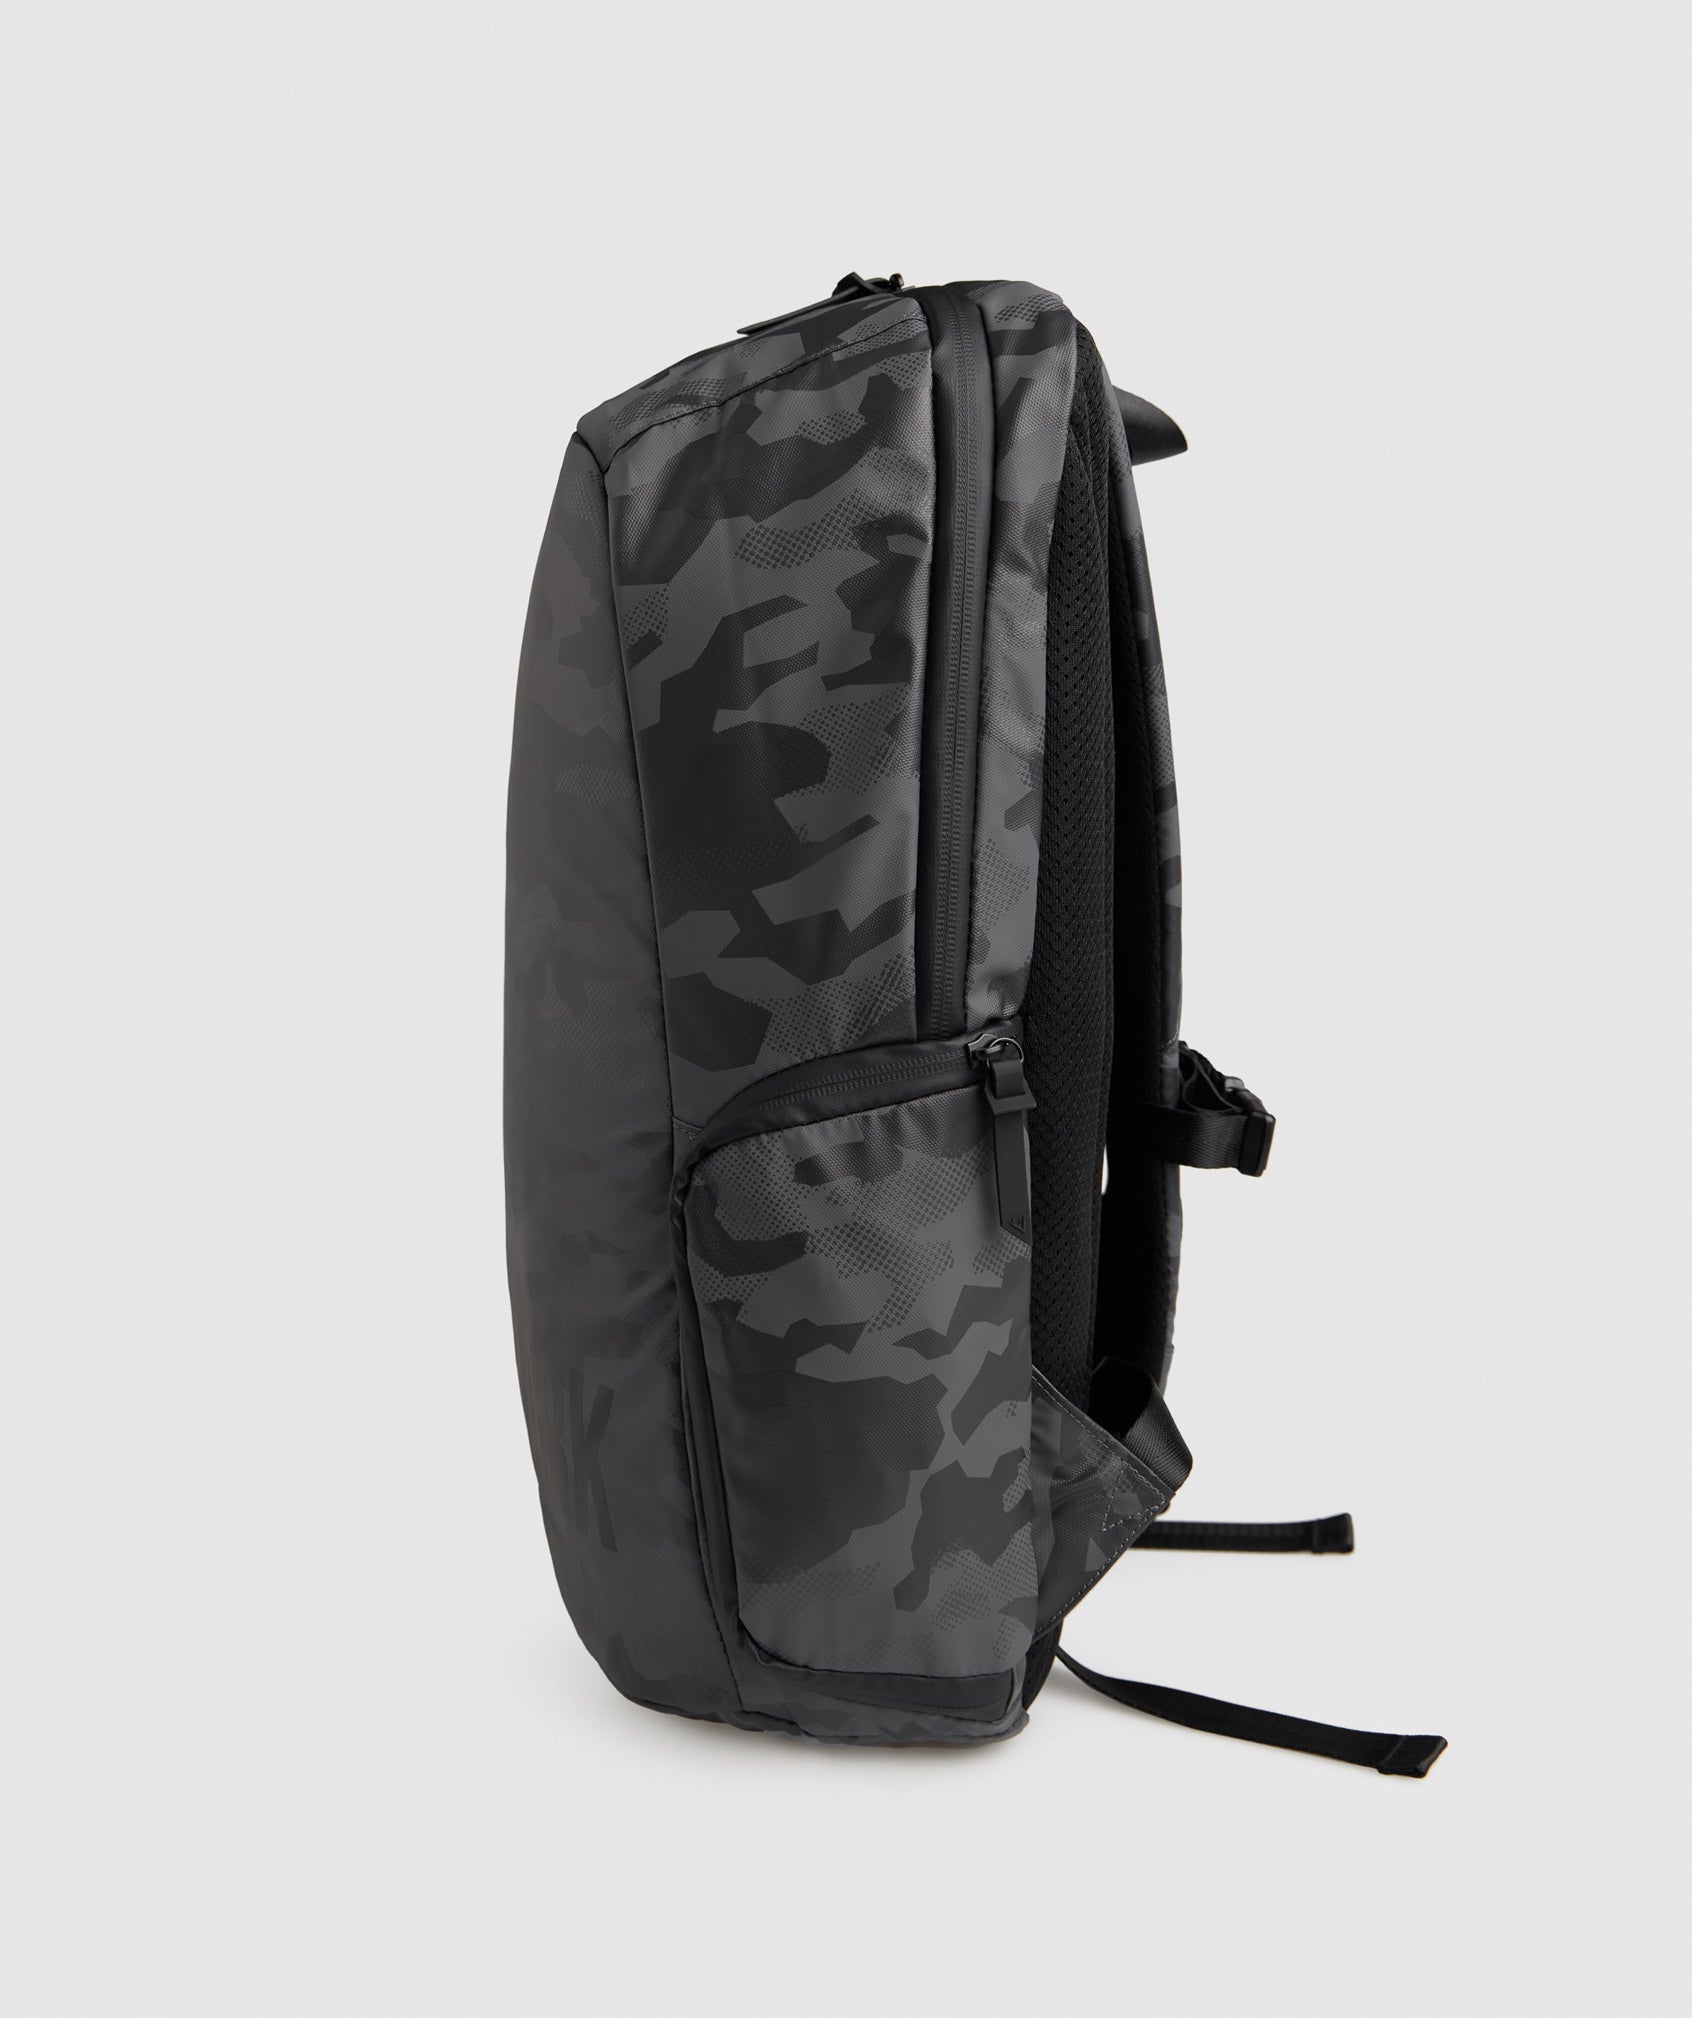  X-Series 0.1 Backpack in Black Print - view 4